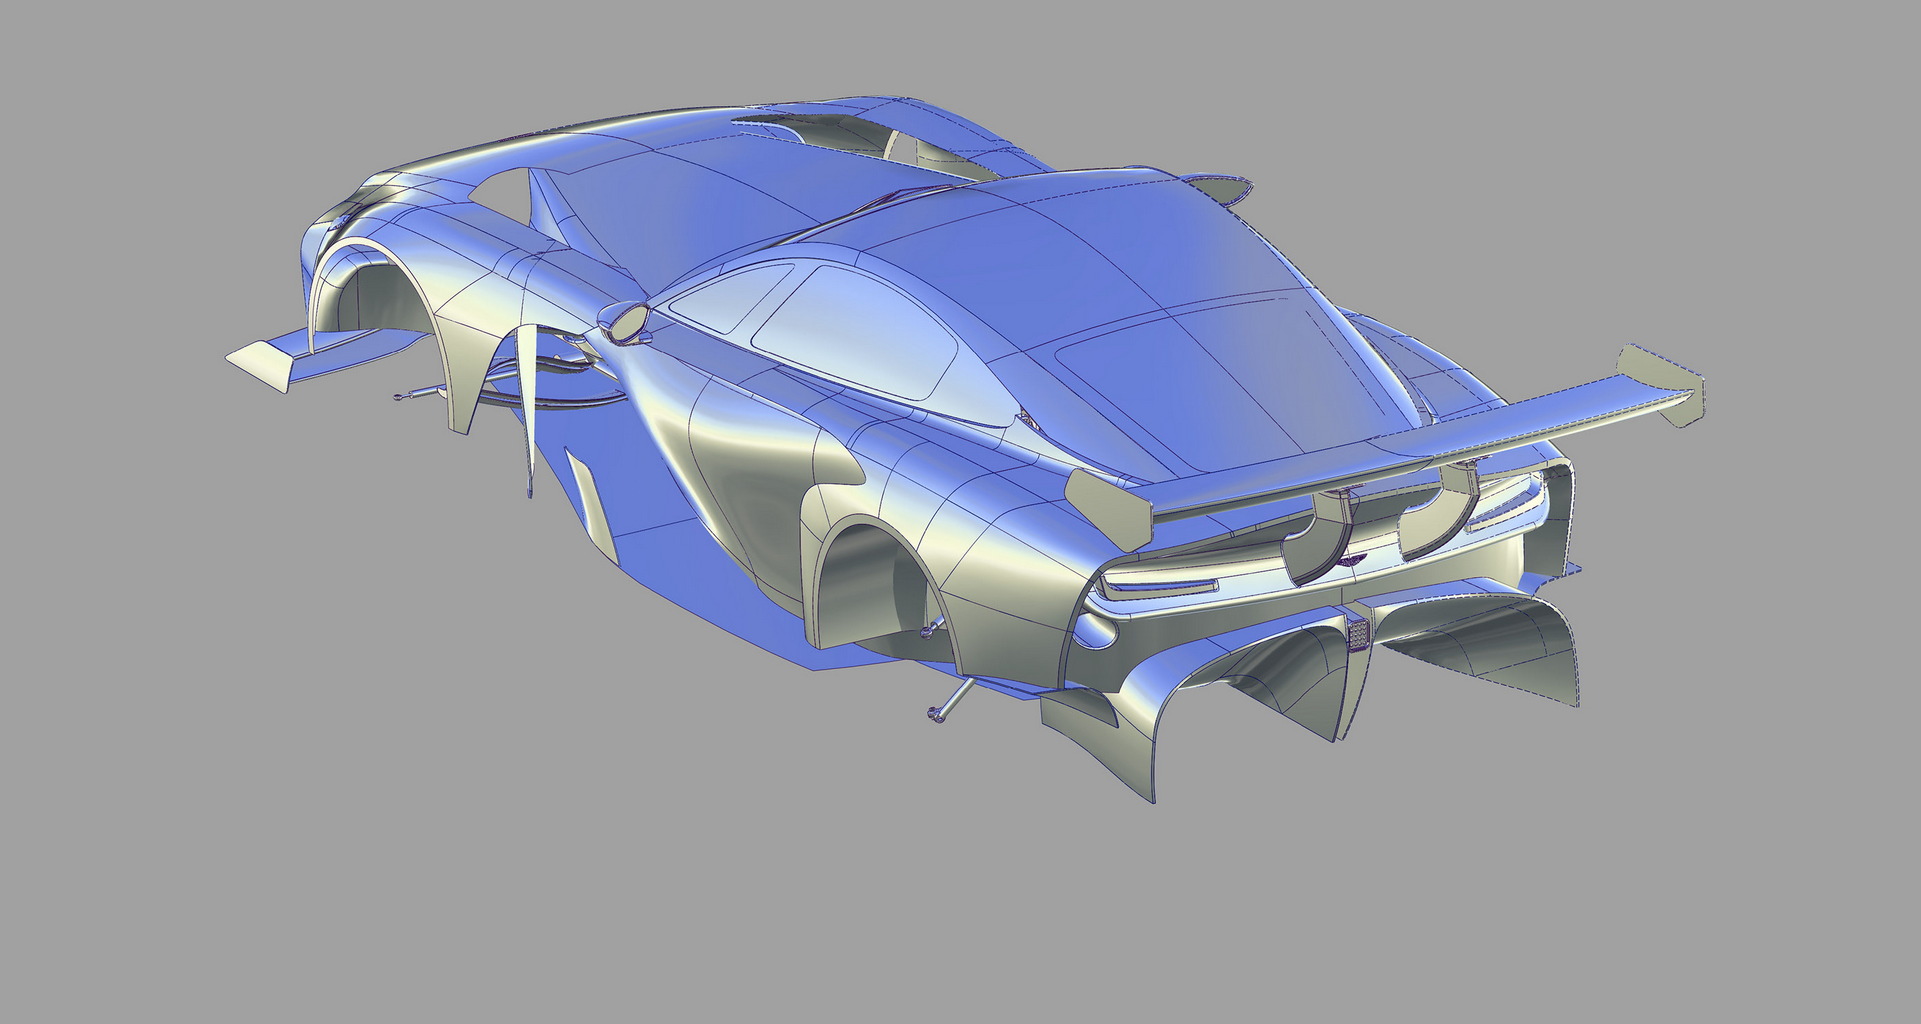 阿斯顿马丁 GT 赛车设计渲染图曝光